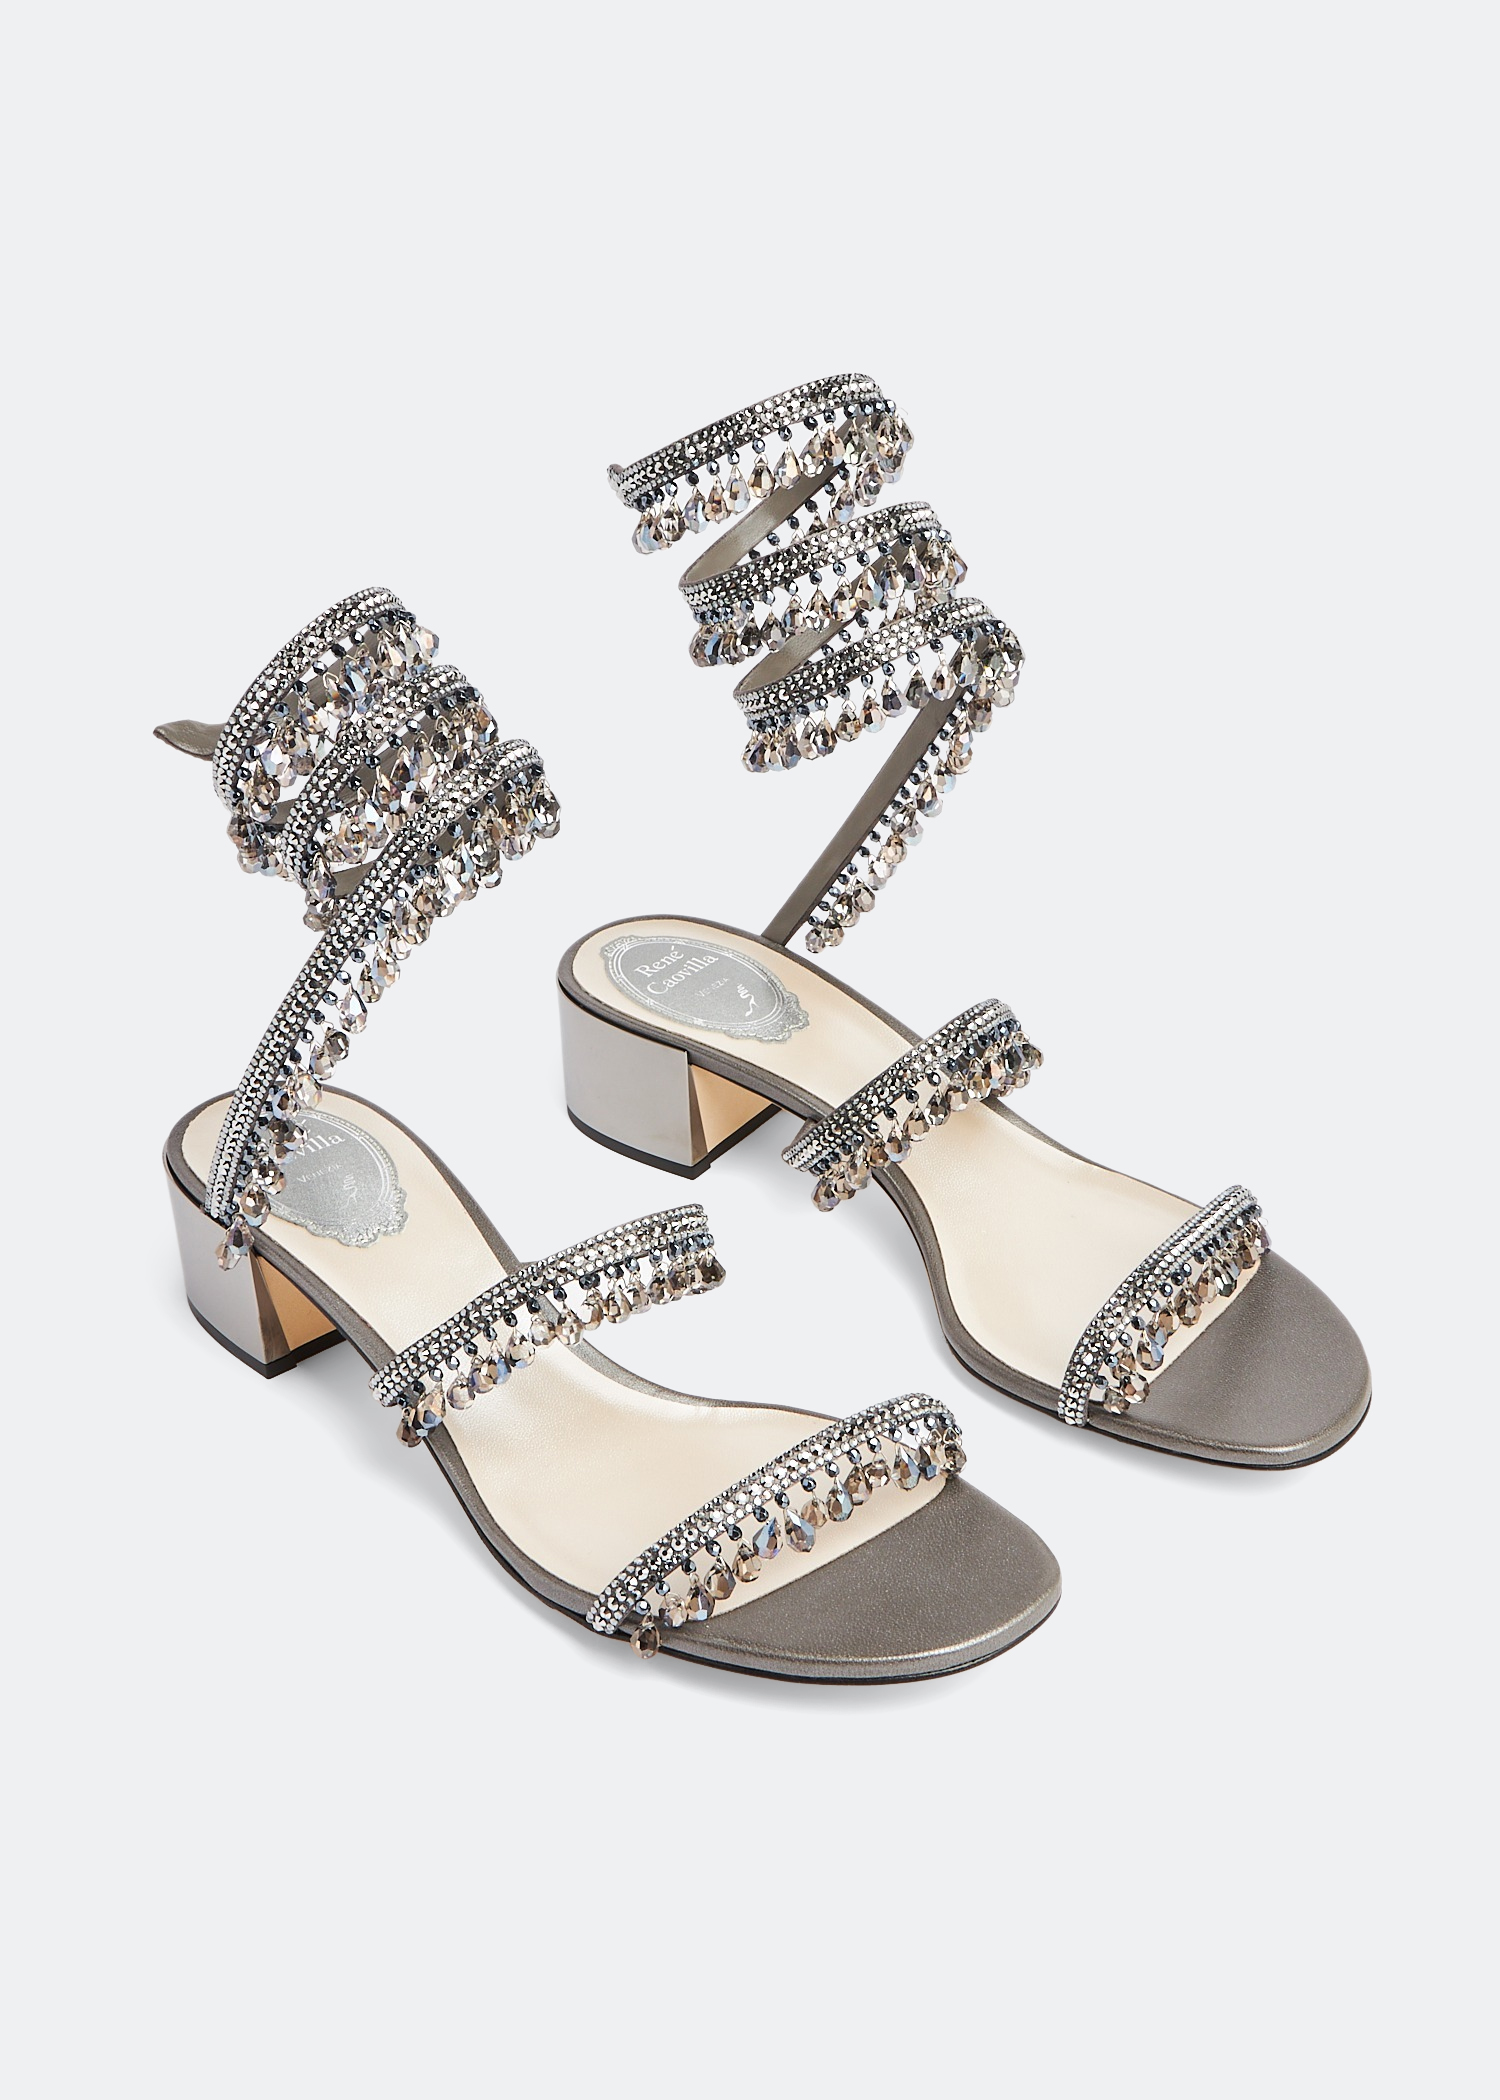 René Caovilla Chandelier crystal sandals for Women - Grey in KSA 